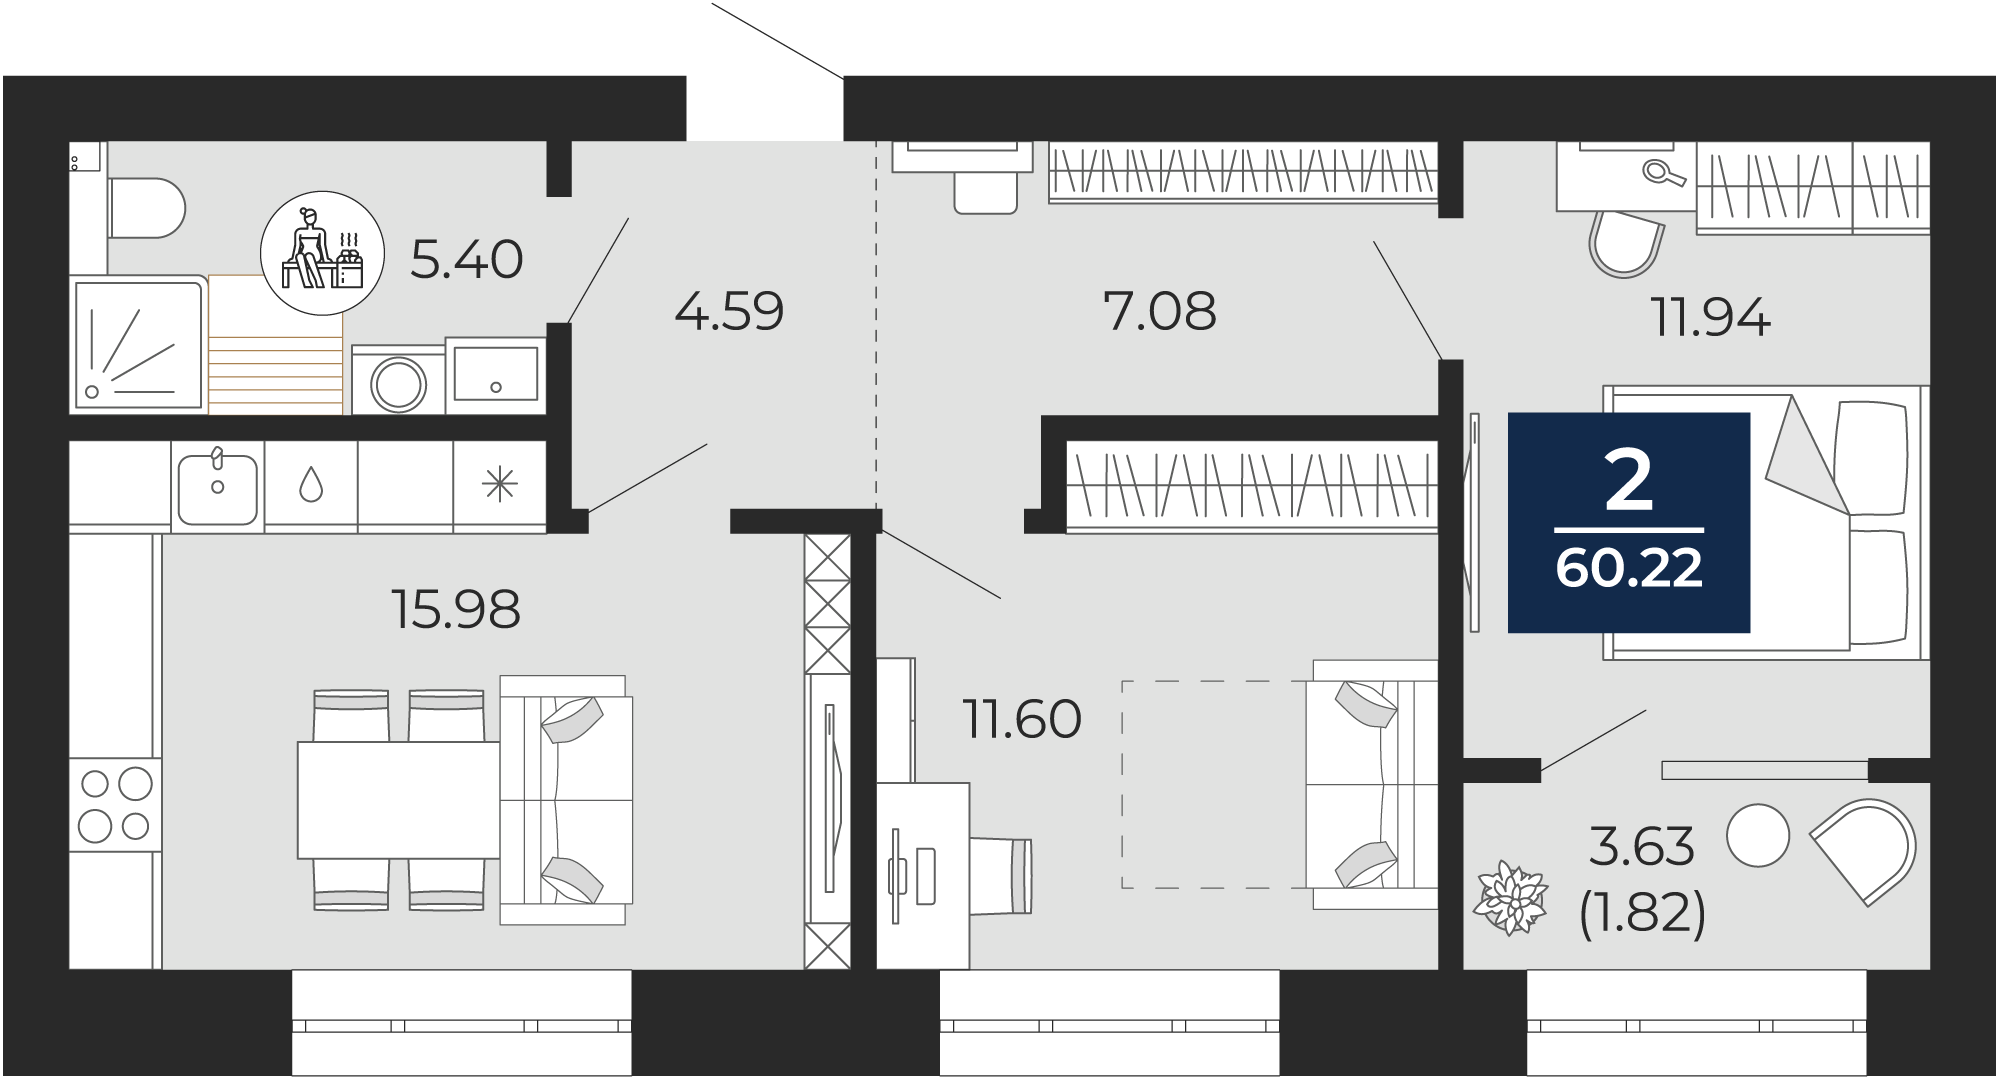 Квартира № 242, 2-комнатная, 60.22 кв. м, 8 этаж